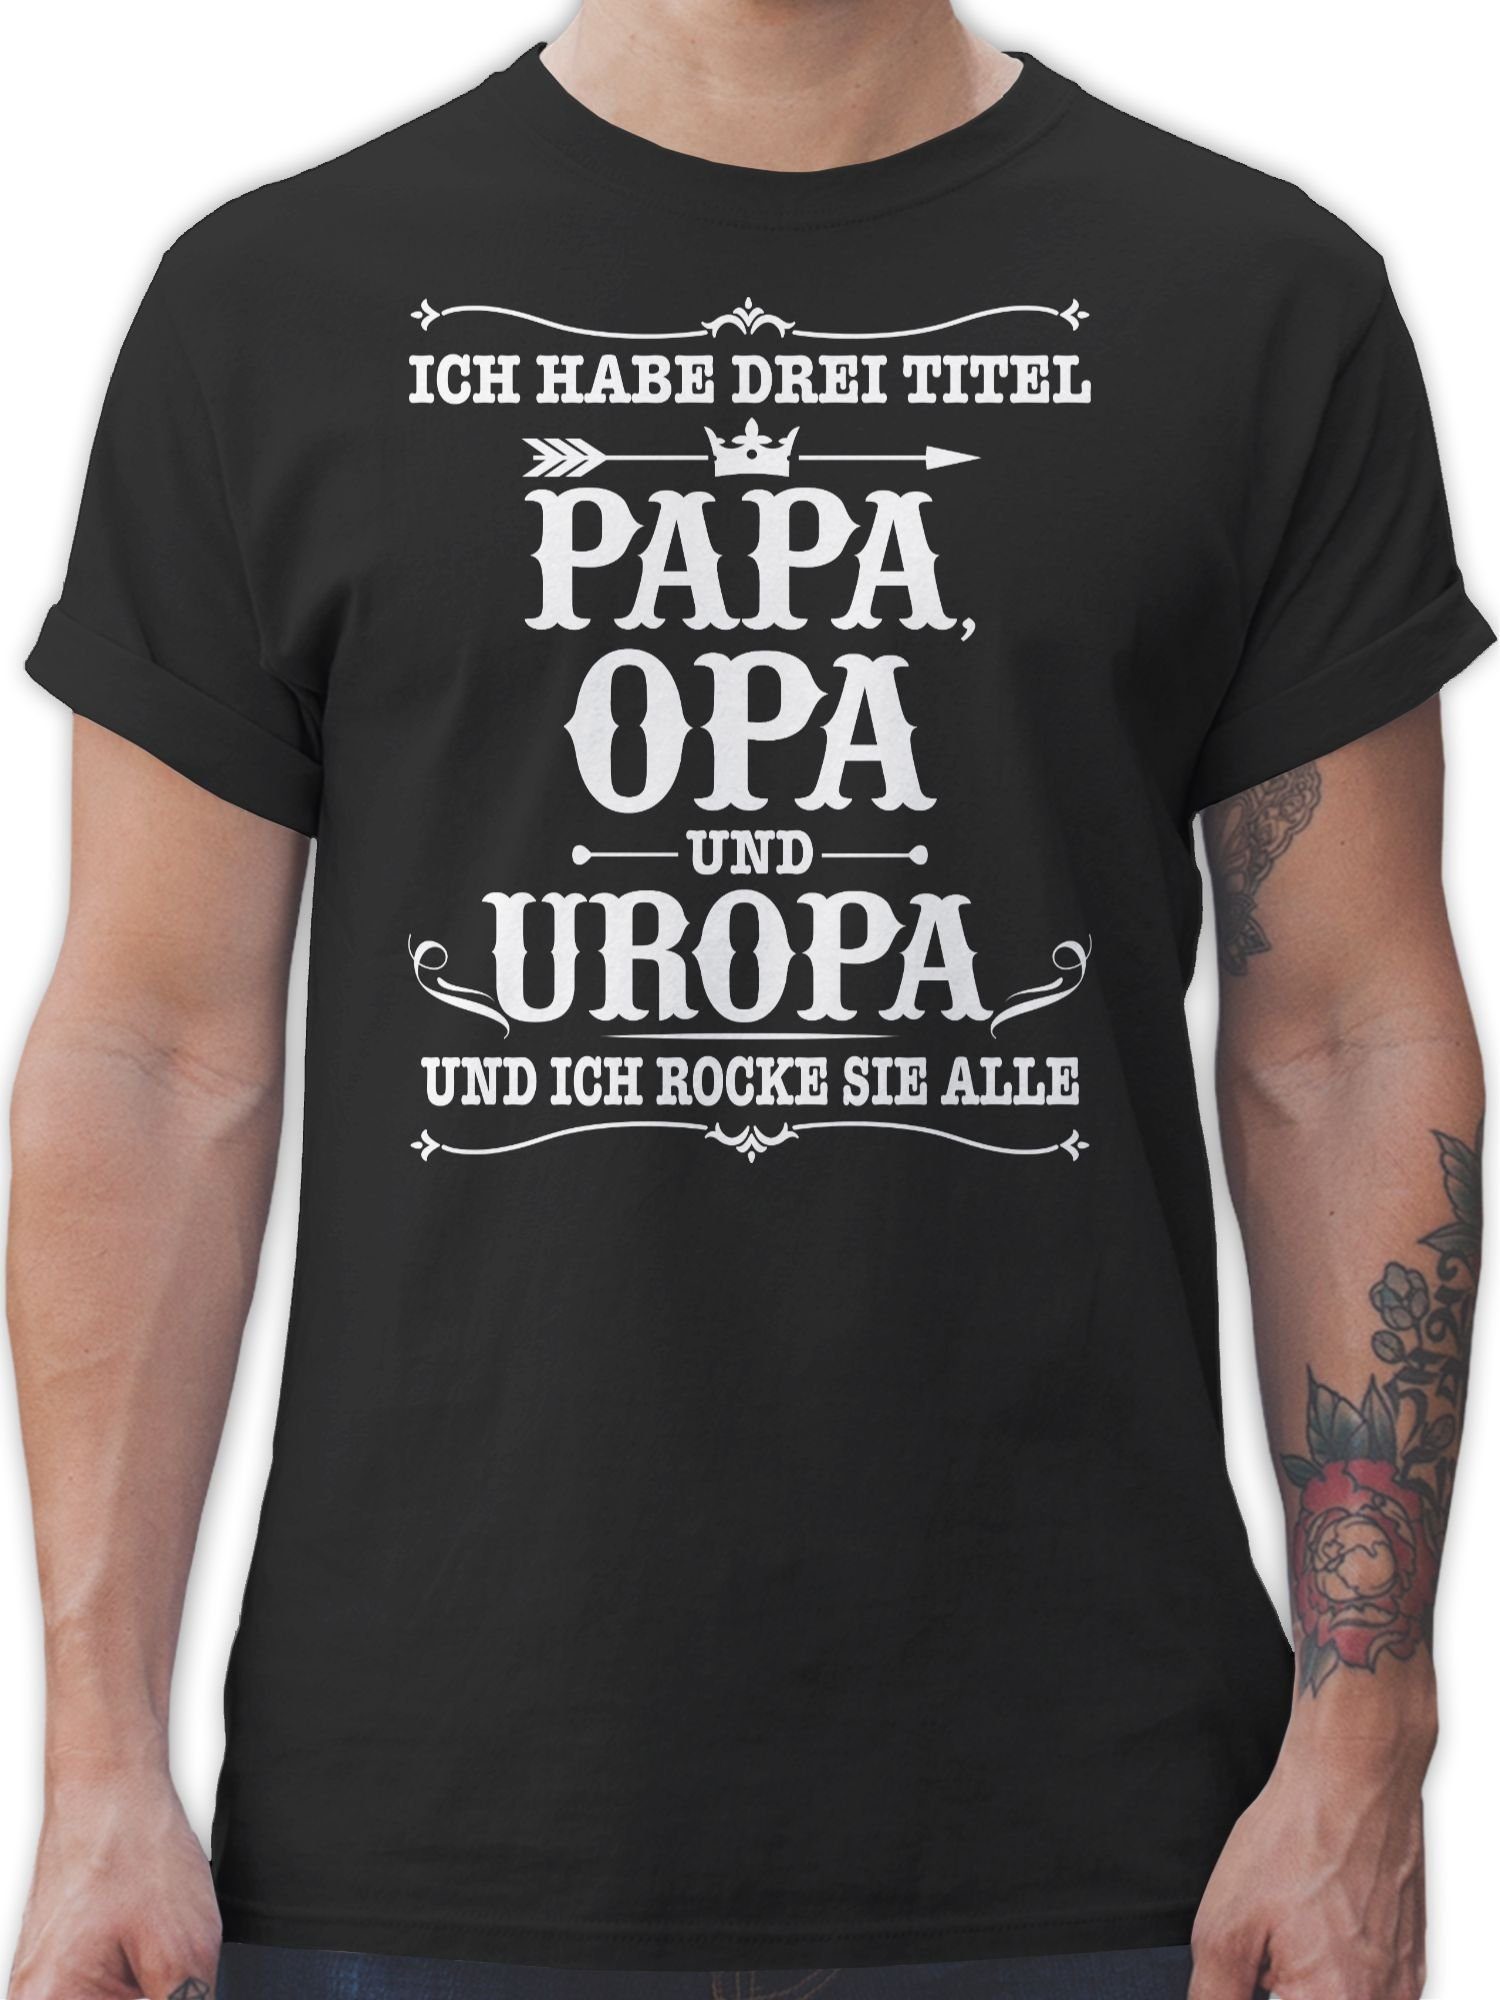 und Geschenke Opa Drei Ich habe T-Shirt Uropa Schwarz Opa 01 Shirtracer - Titel Papa weiß